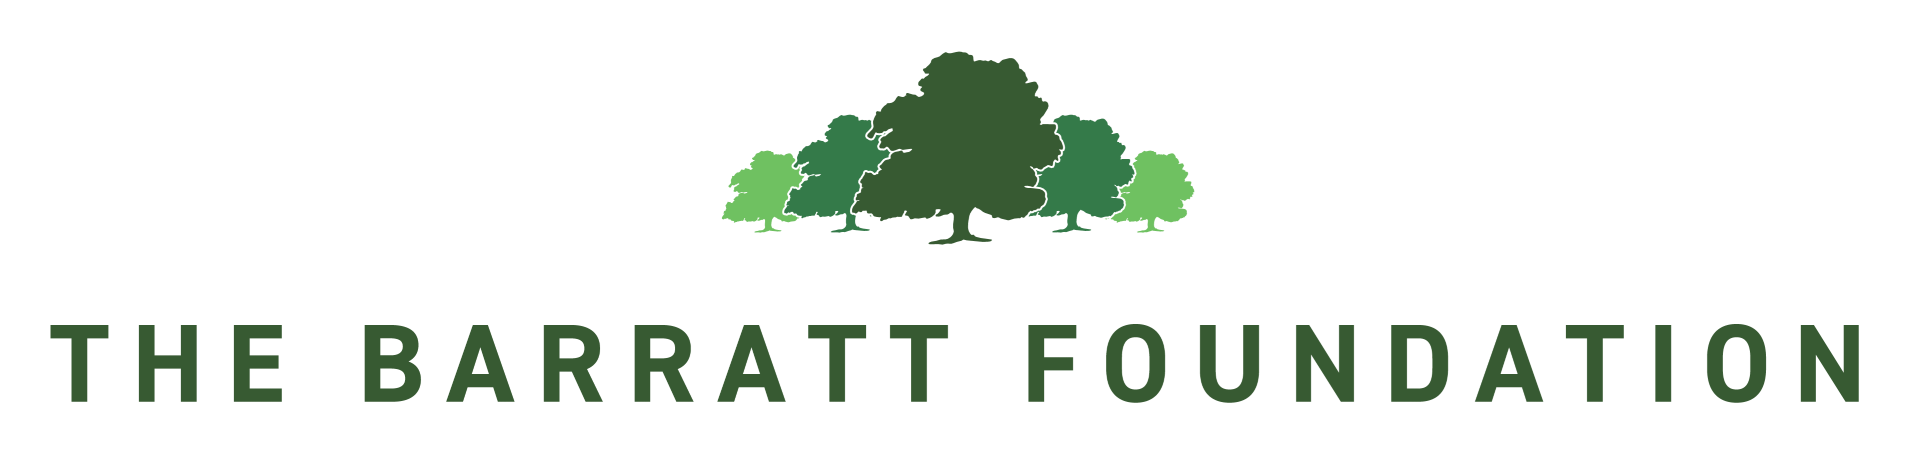 61314-009-Barratt-Developments-Foundation-logo-FINAL-28-Oct